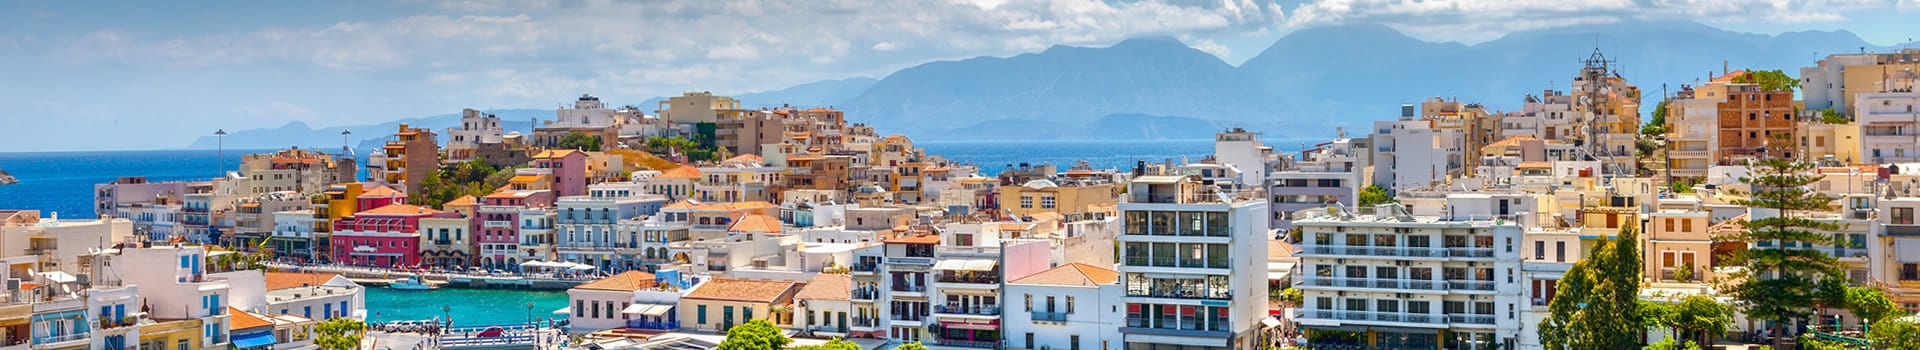 Billetes de Barco y Ferry en Creta